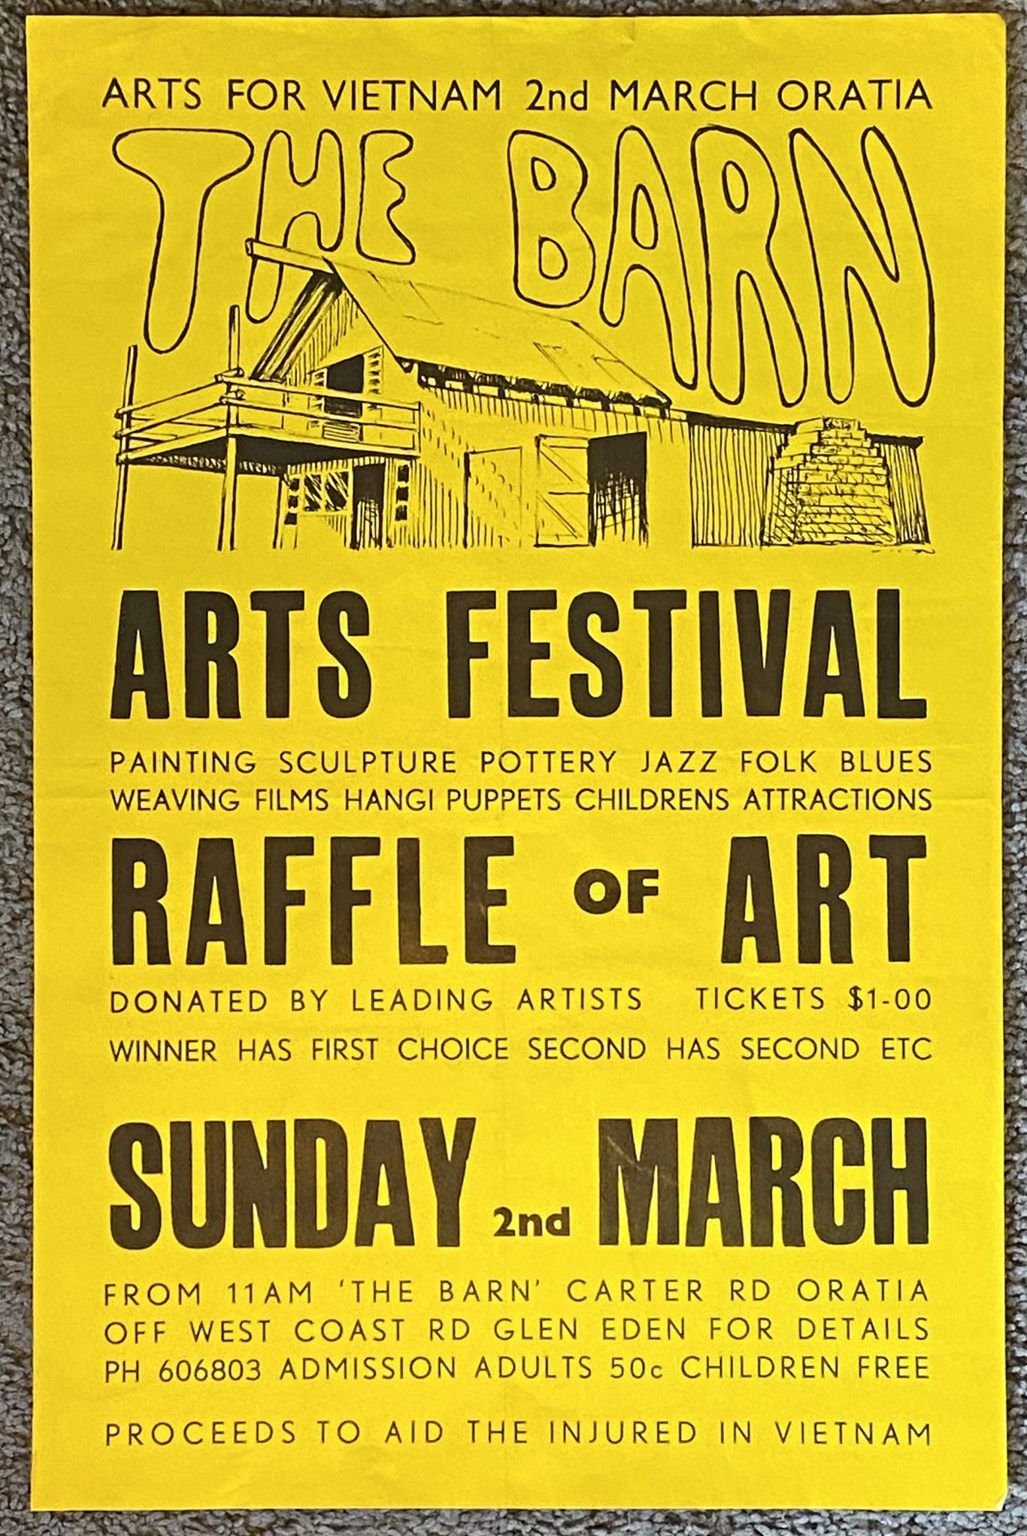 VINTAGE POSTER: The Barn Arts Festival Raffle of Art - Vietnam War 1960s